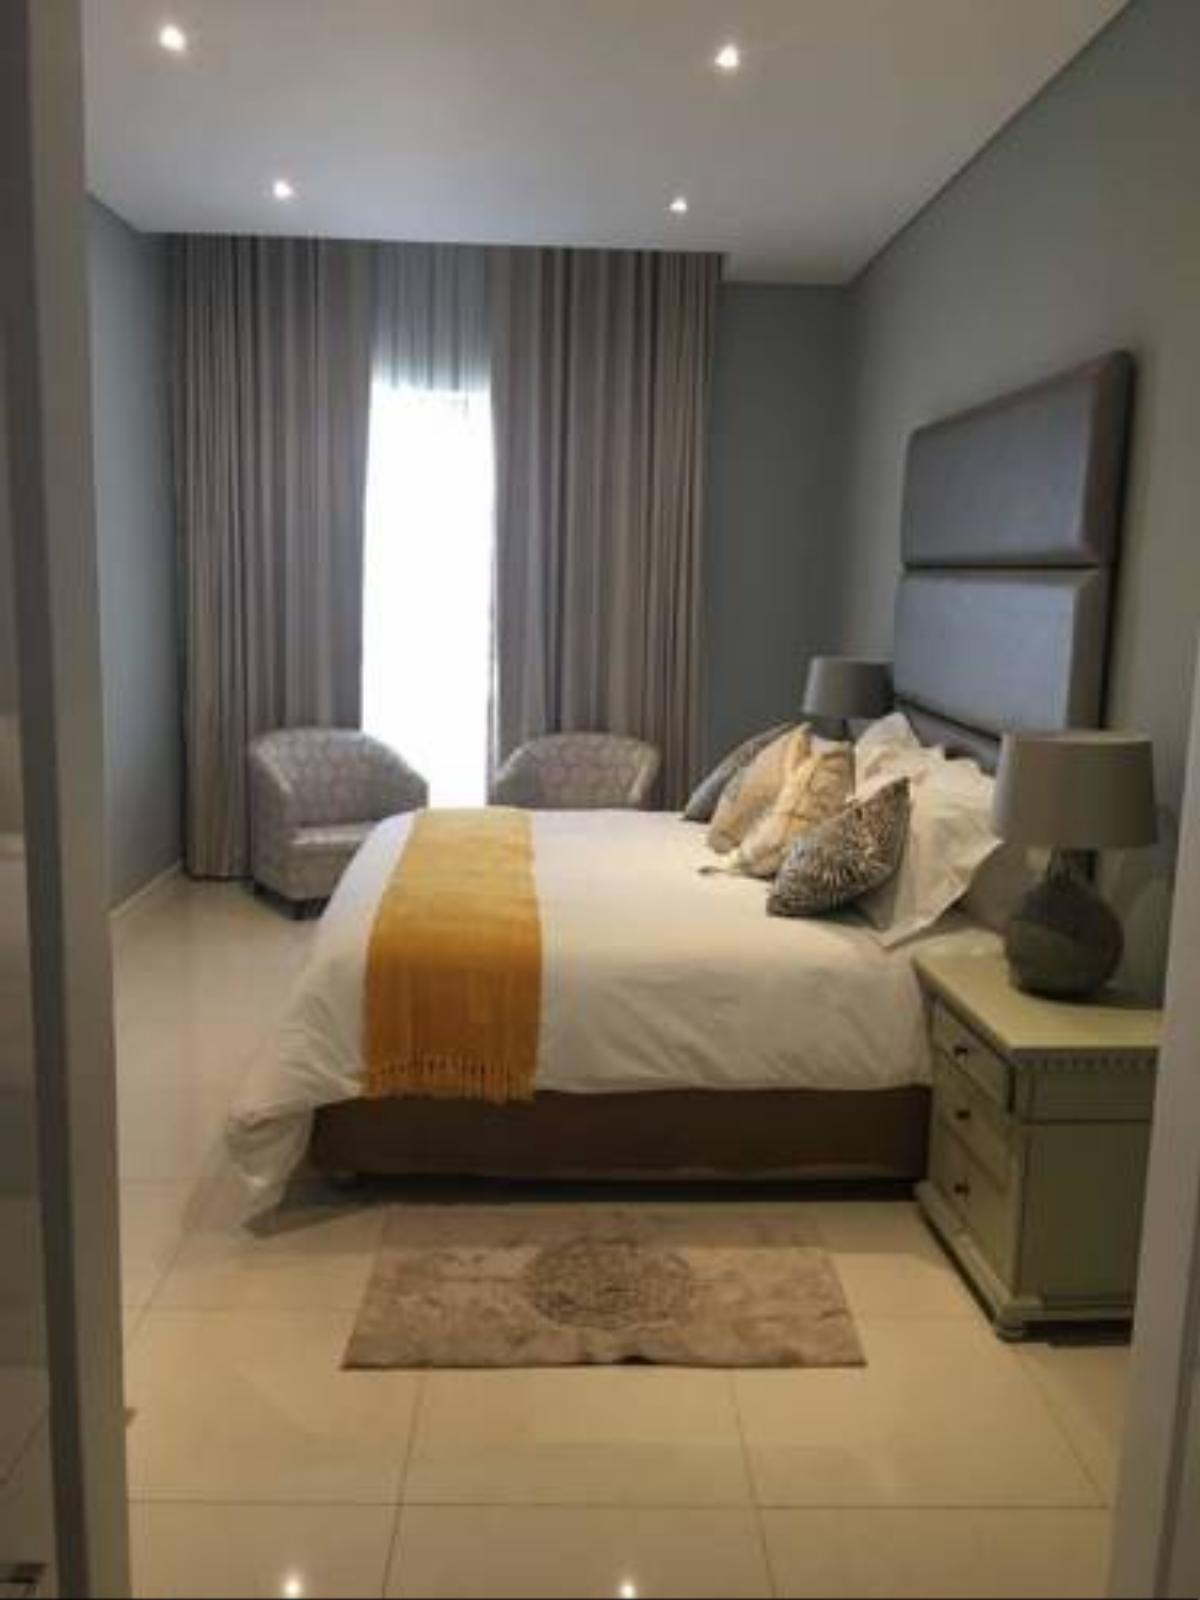 Apartment Hotel Gaborone Botswana